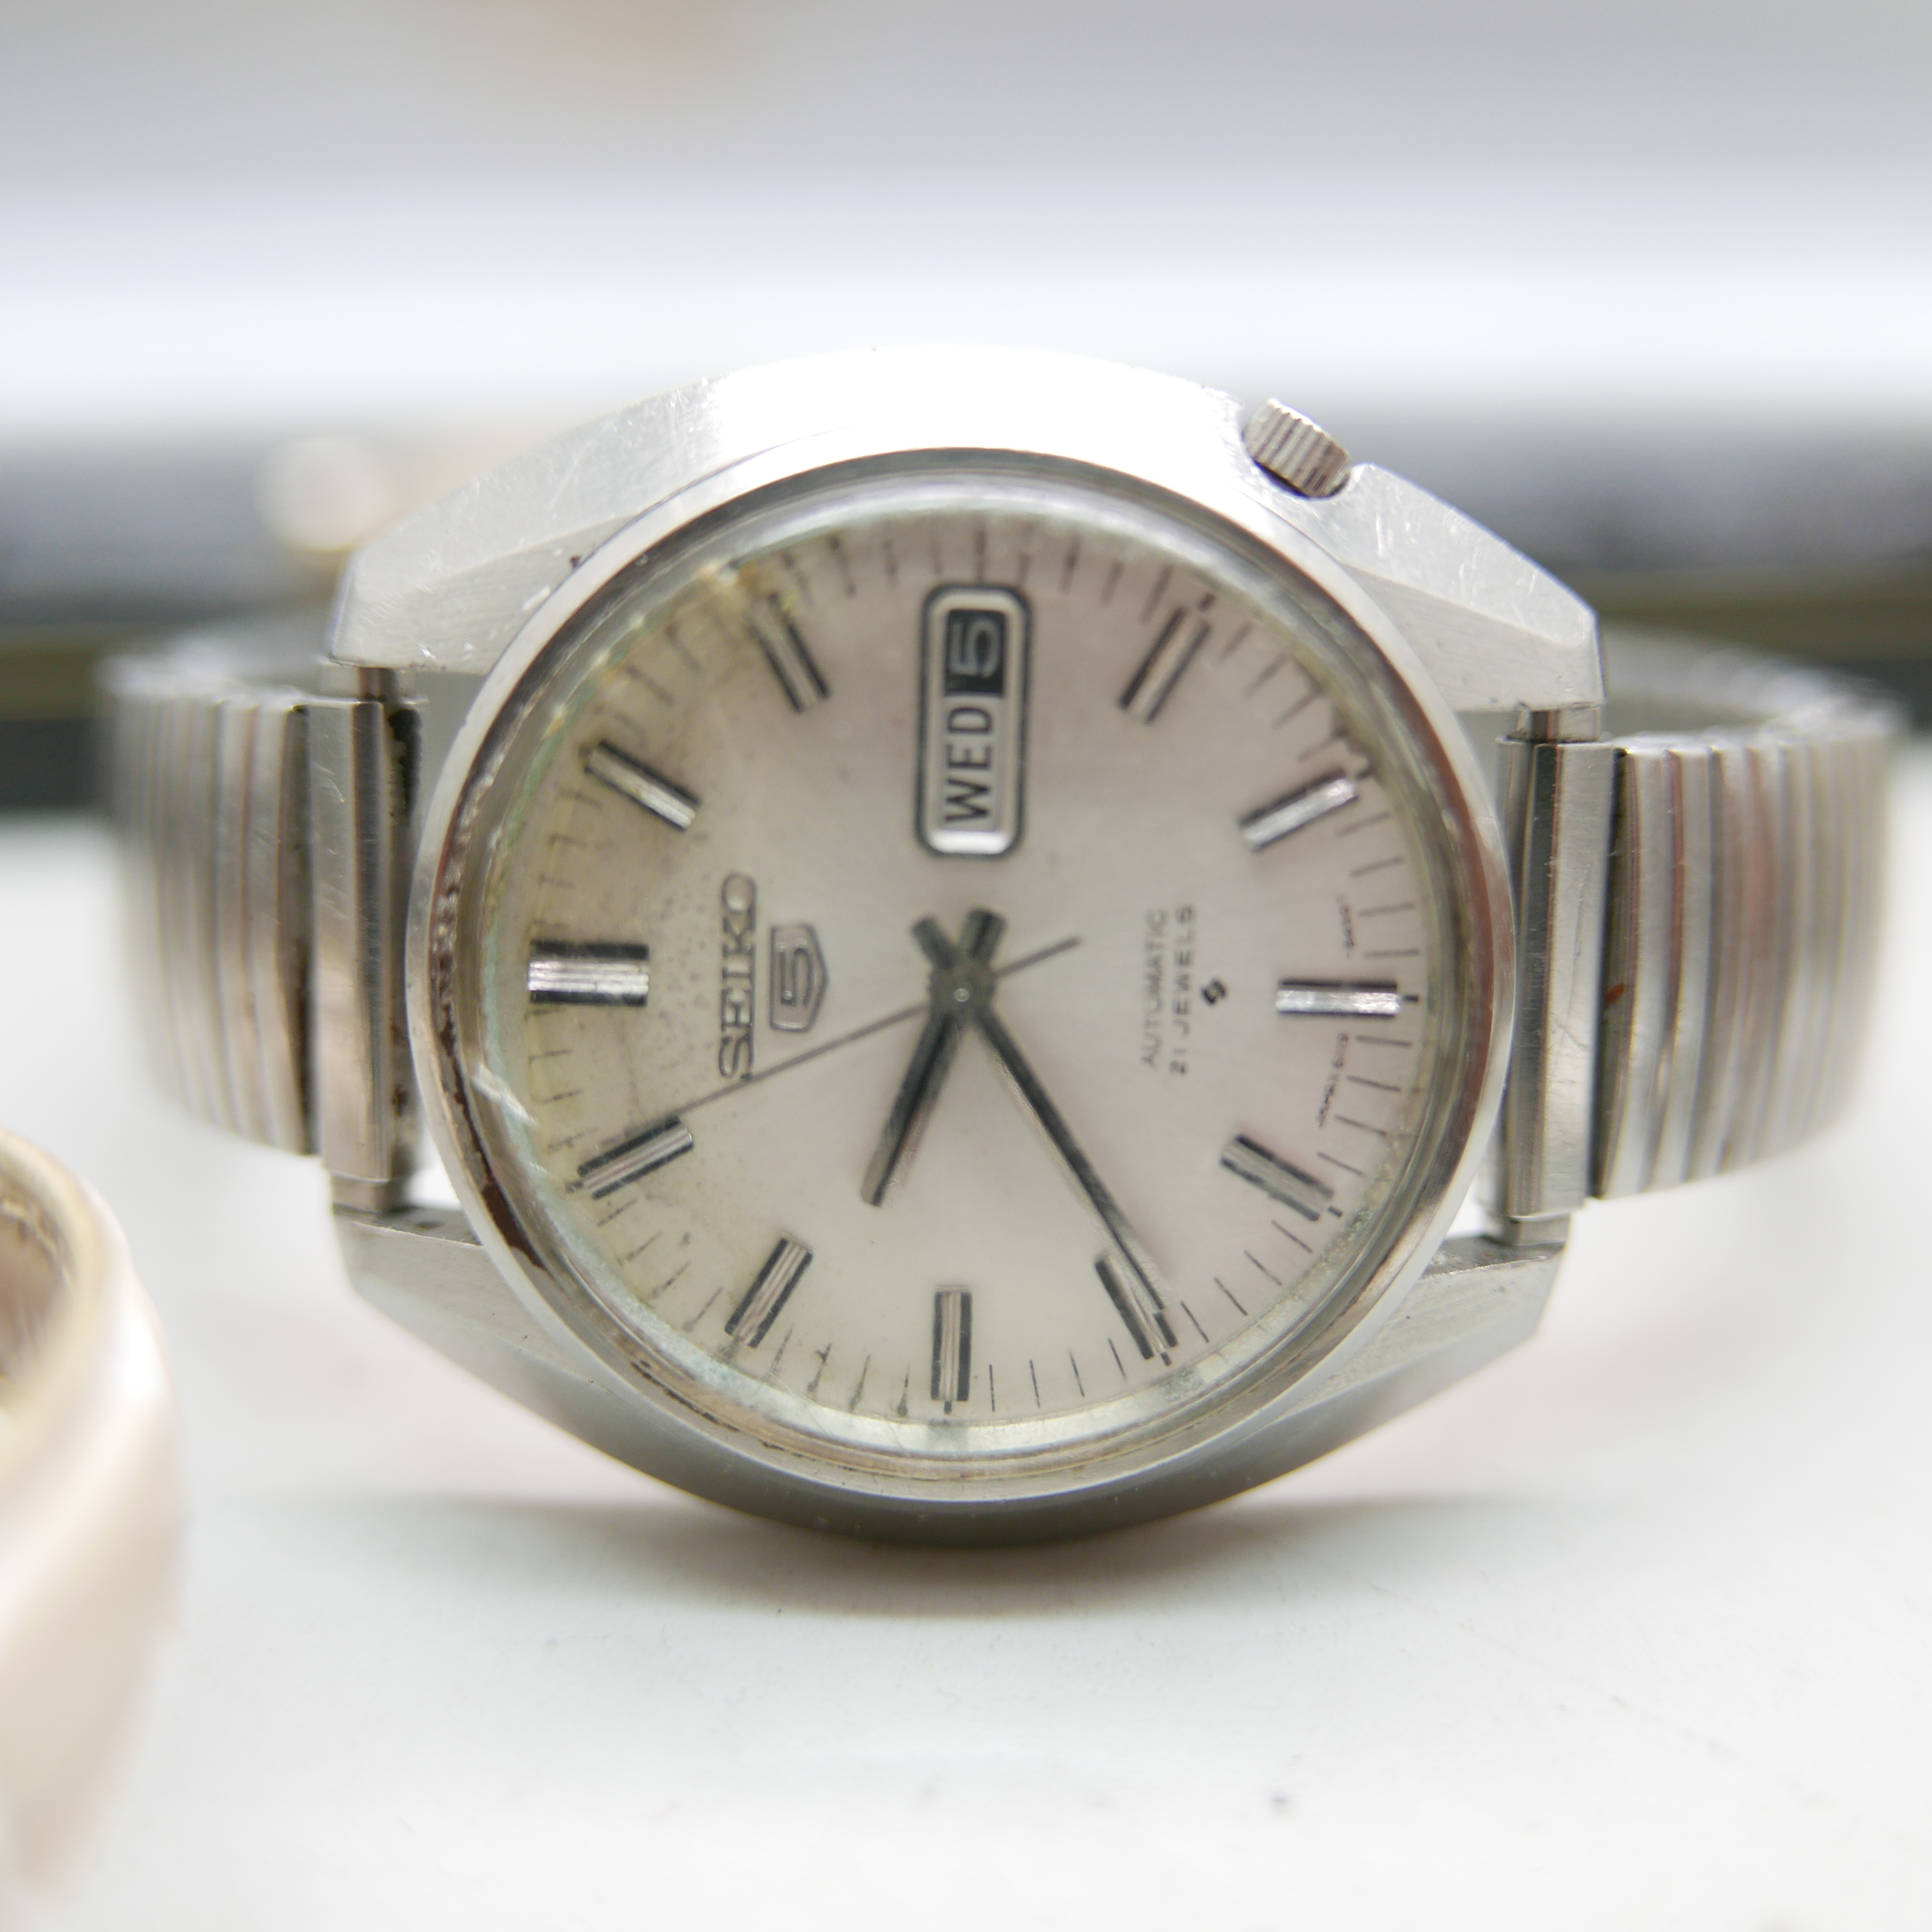 Wristwatches, Seiko 5 automatic day date movement 6119, Sekonda, etc. - Image 2 of 3